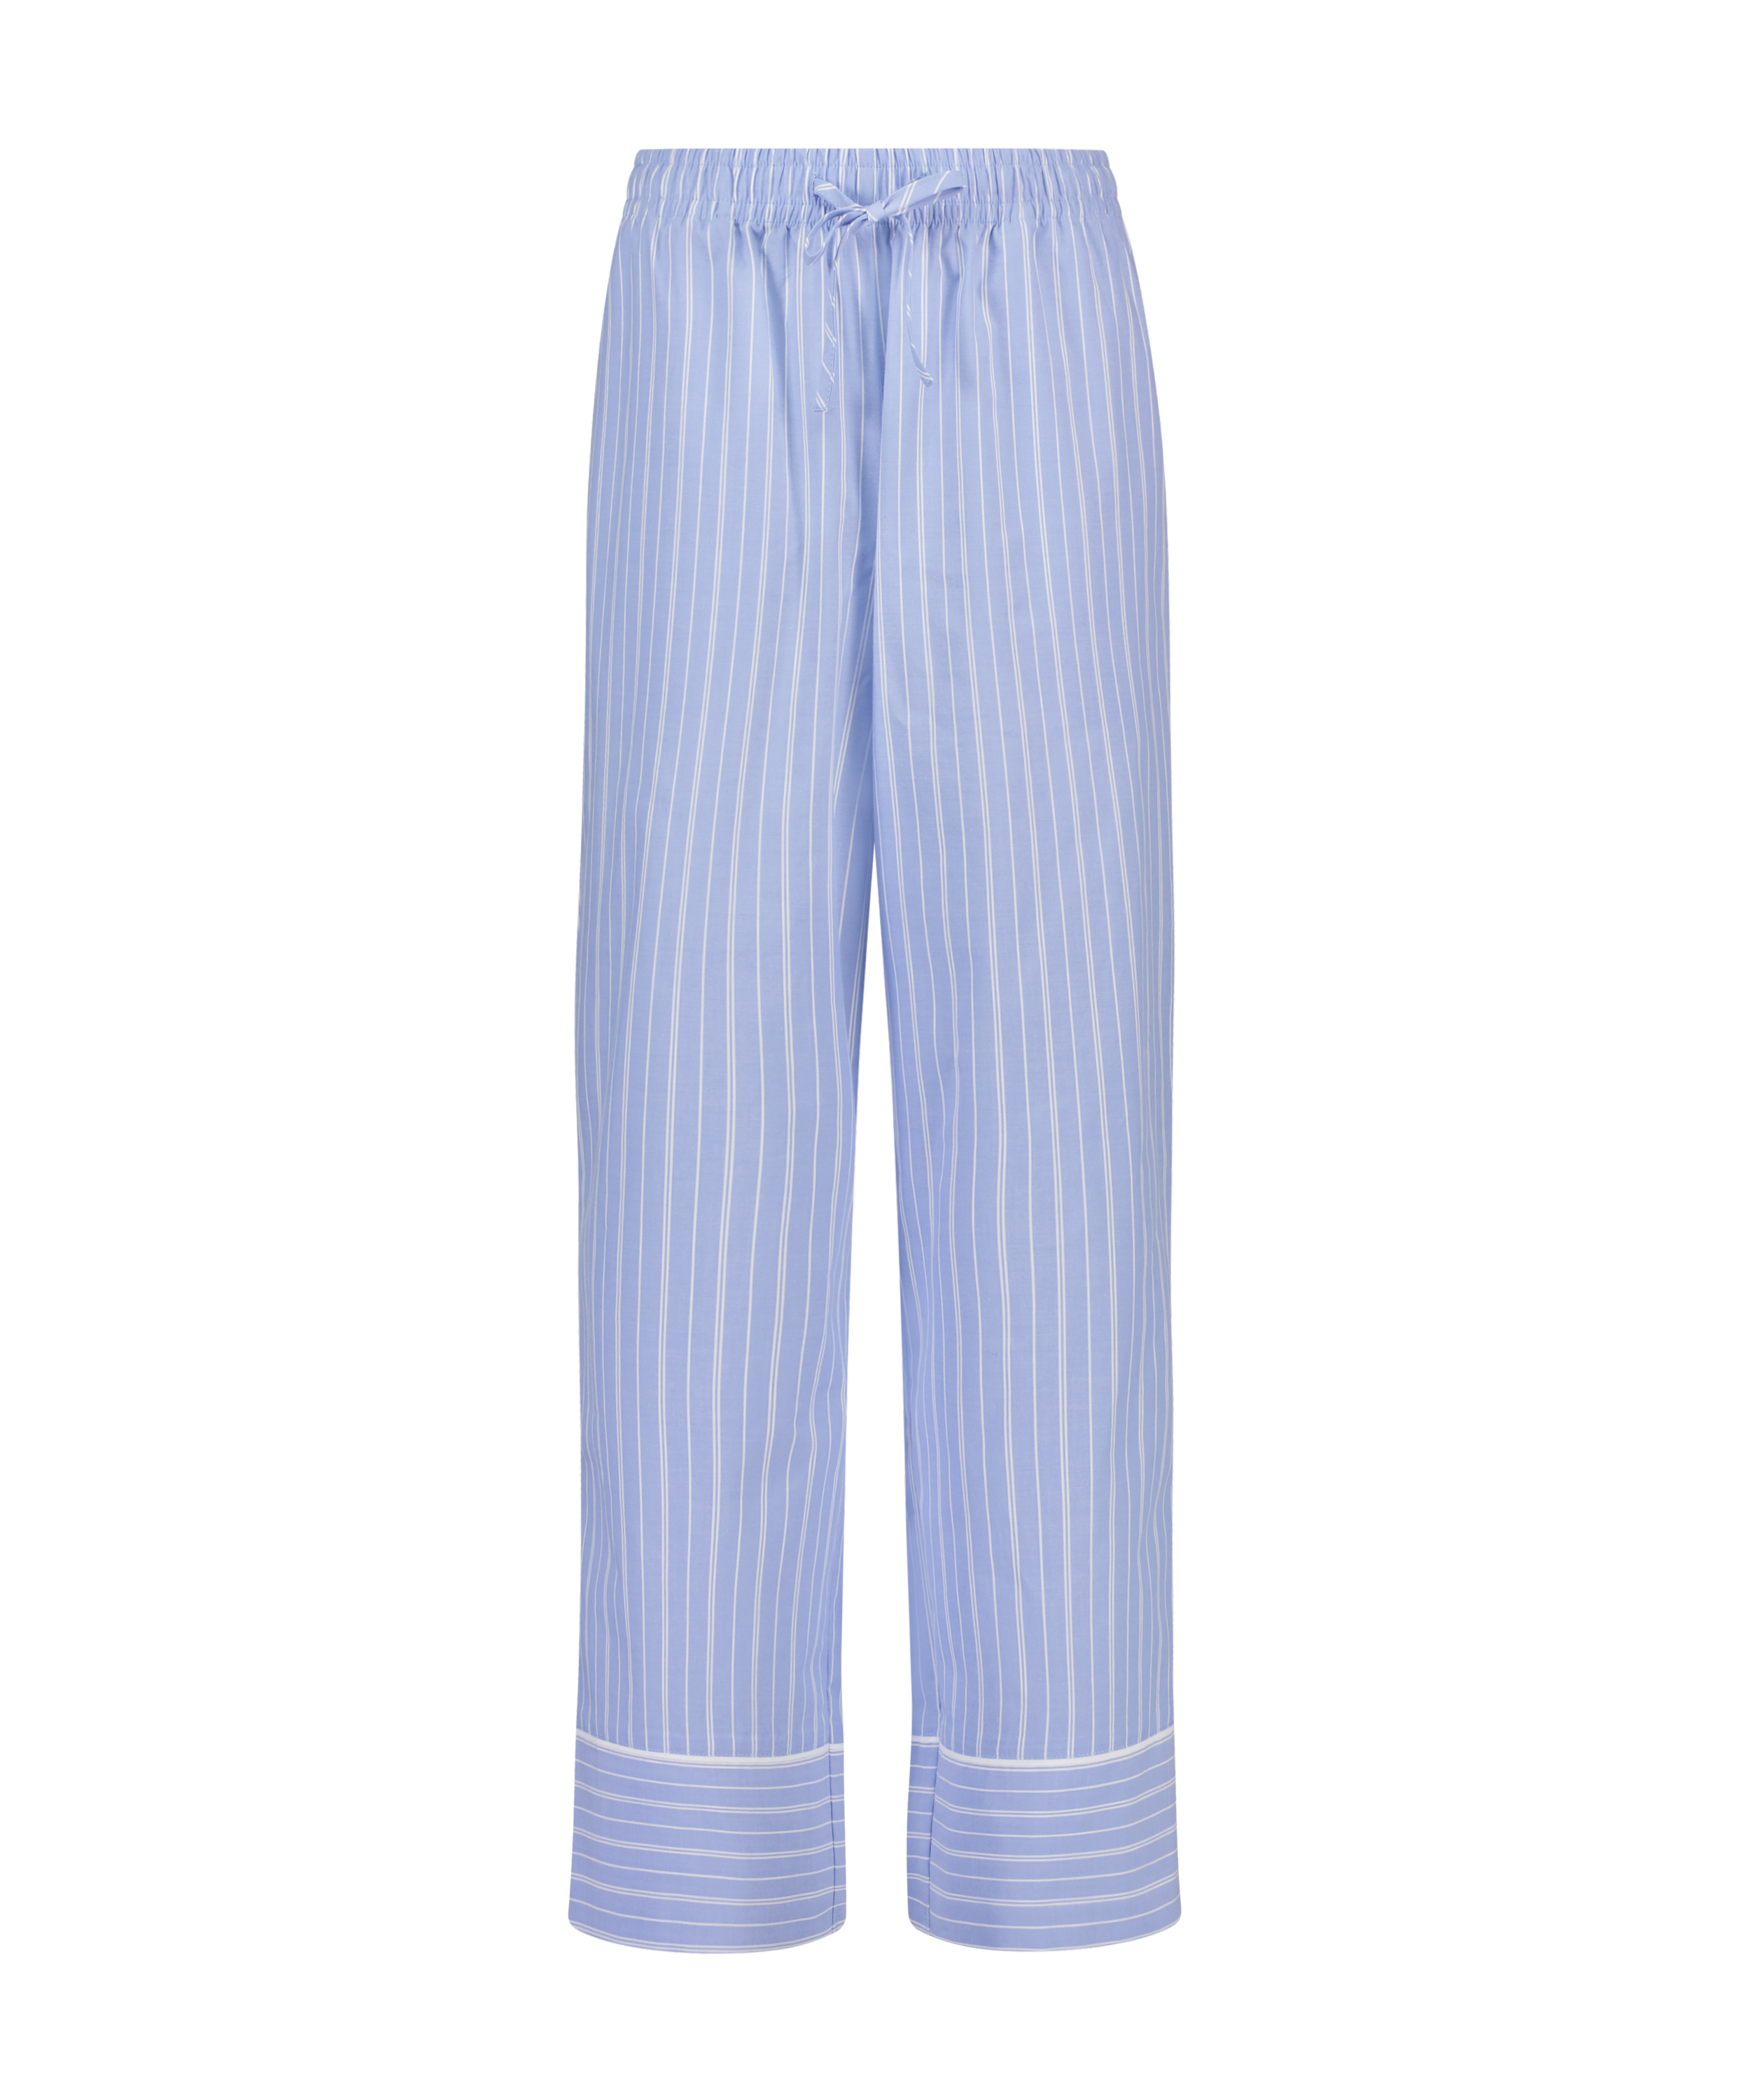 Petite pyjamabroek Katoen, Blauw, main